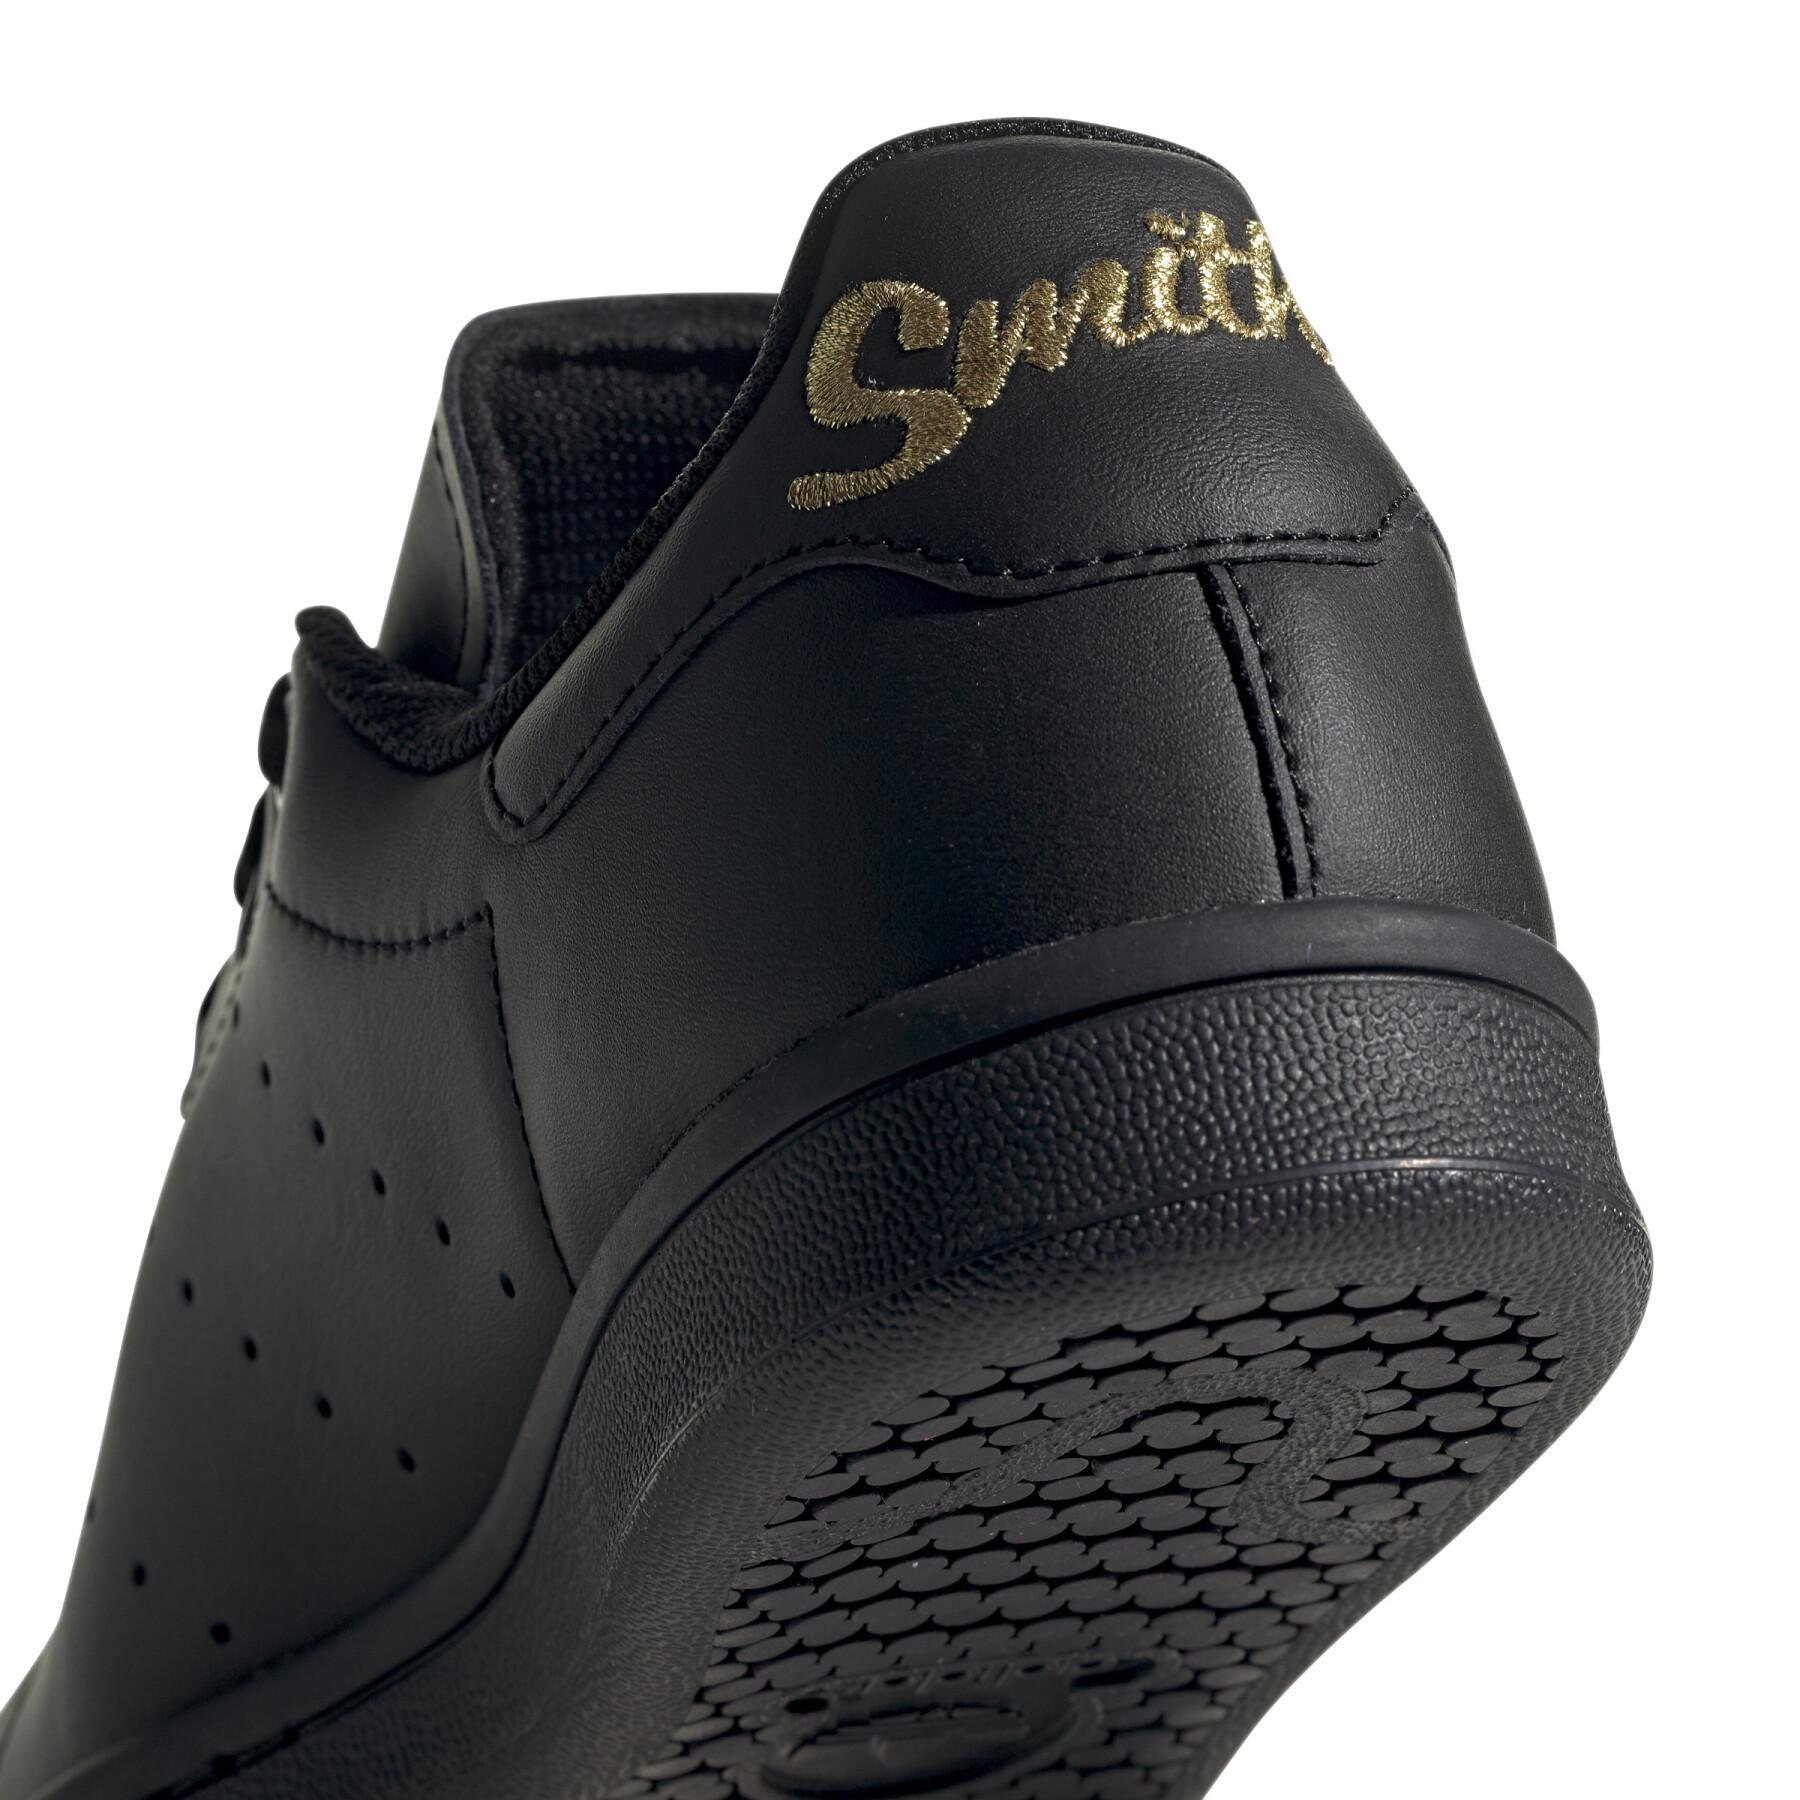 Children's sneakers adidas originals Stan Smith